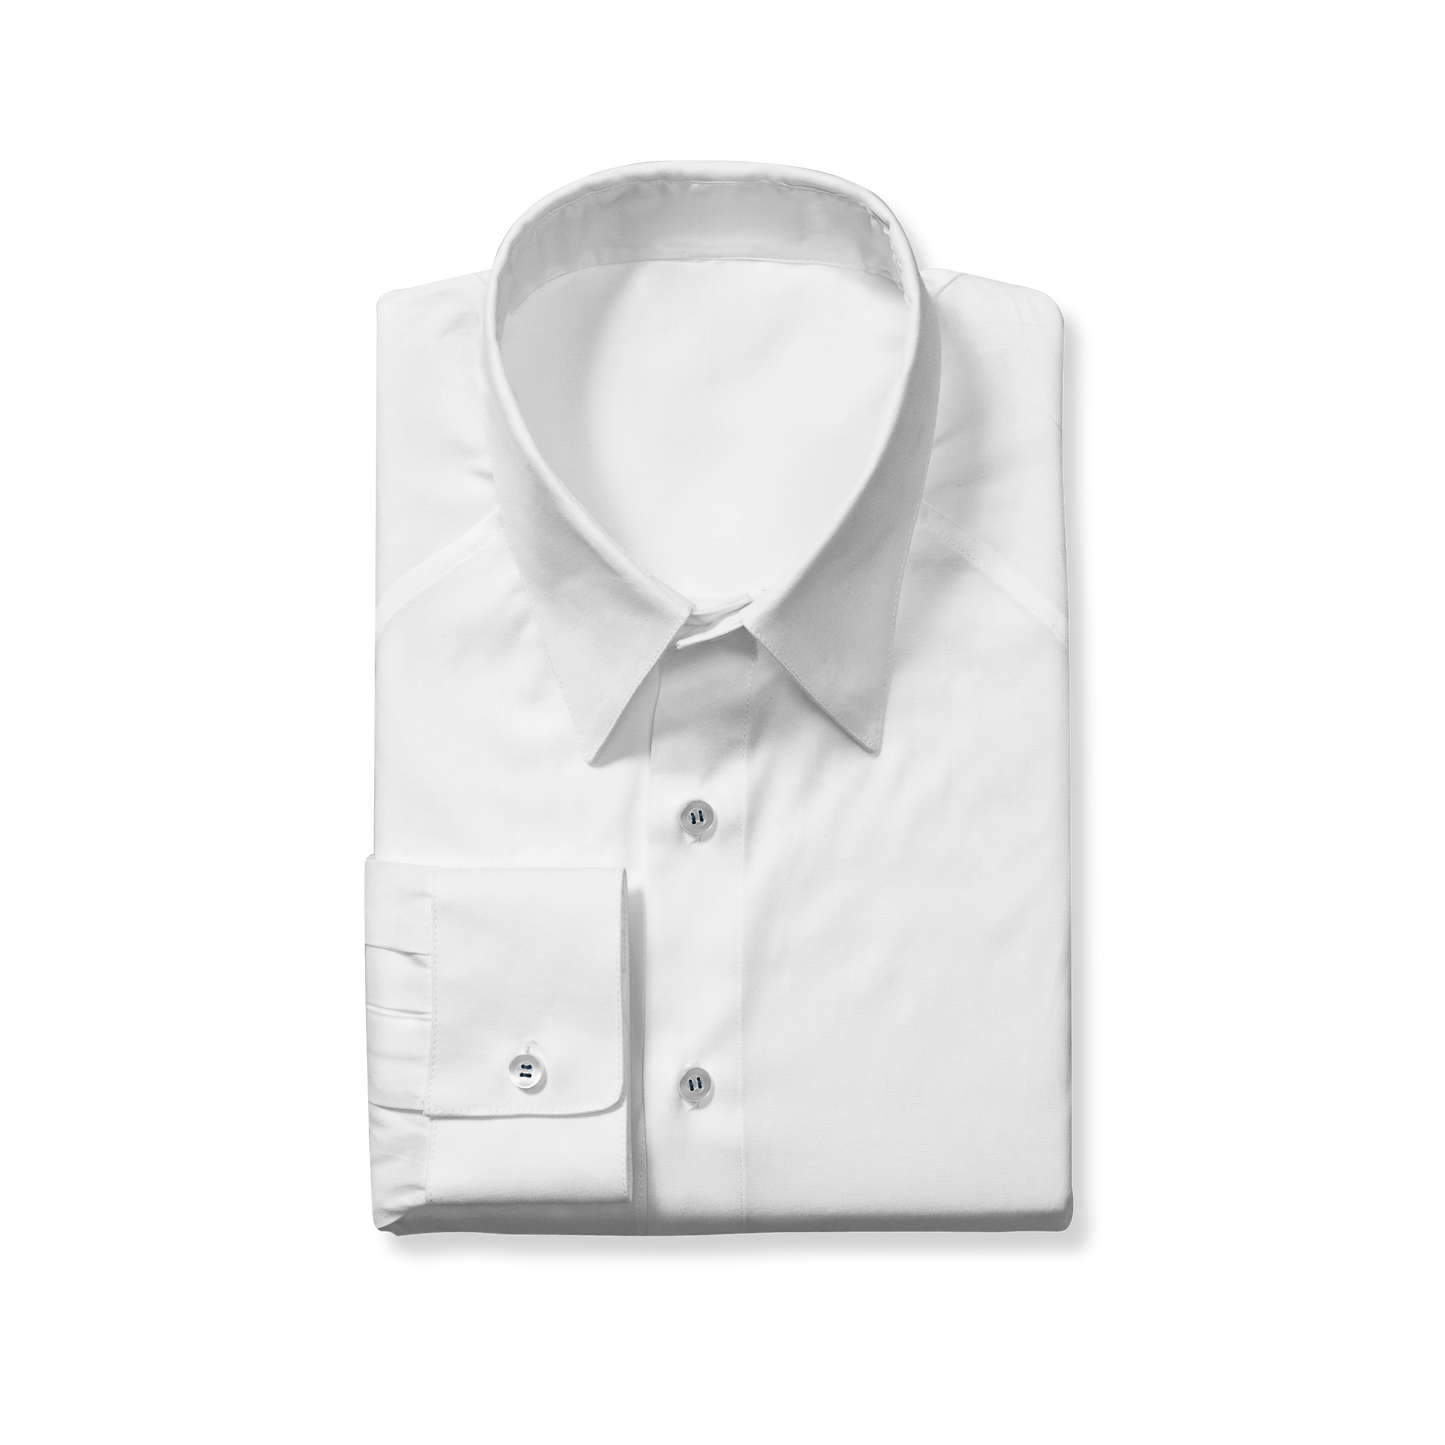 Regular Cut White Dress Shirt